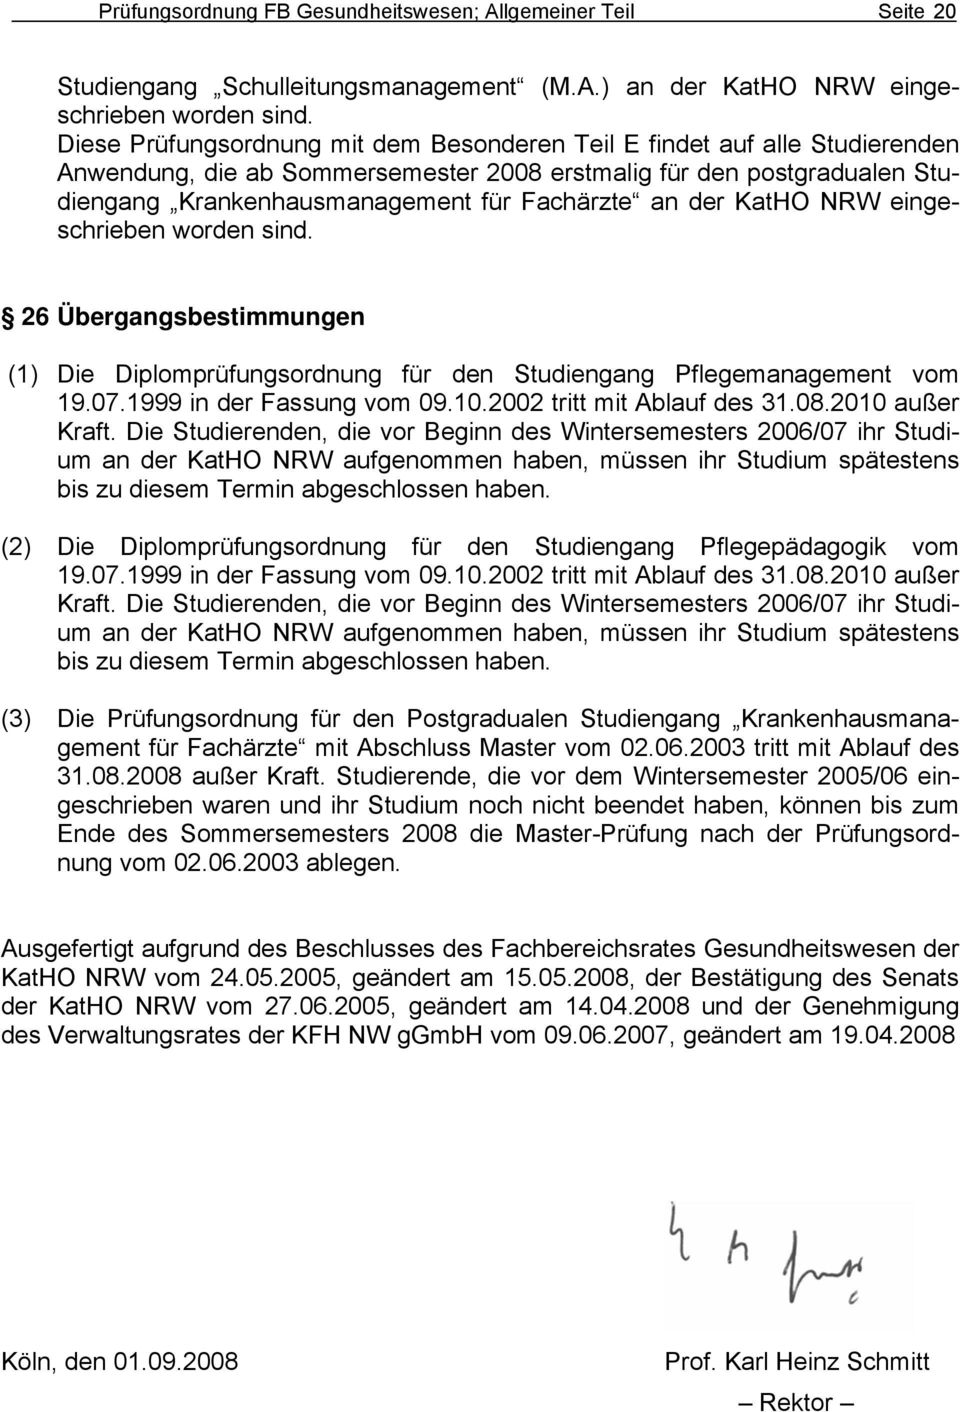 der KatHO NRW eingeschrieben worden sind. 26 Übergangsbestimmungen (1) Die Diplomprüfungsordnung für den Studiengang Pflegemanagement vom 19.07.1999 in der Fassung vom 09.10.